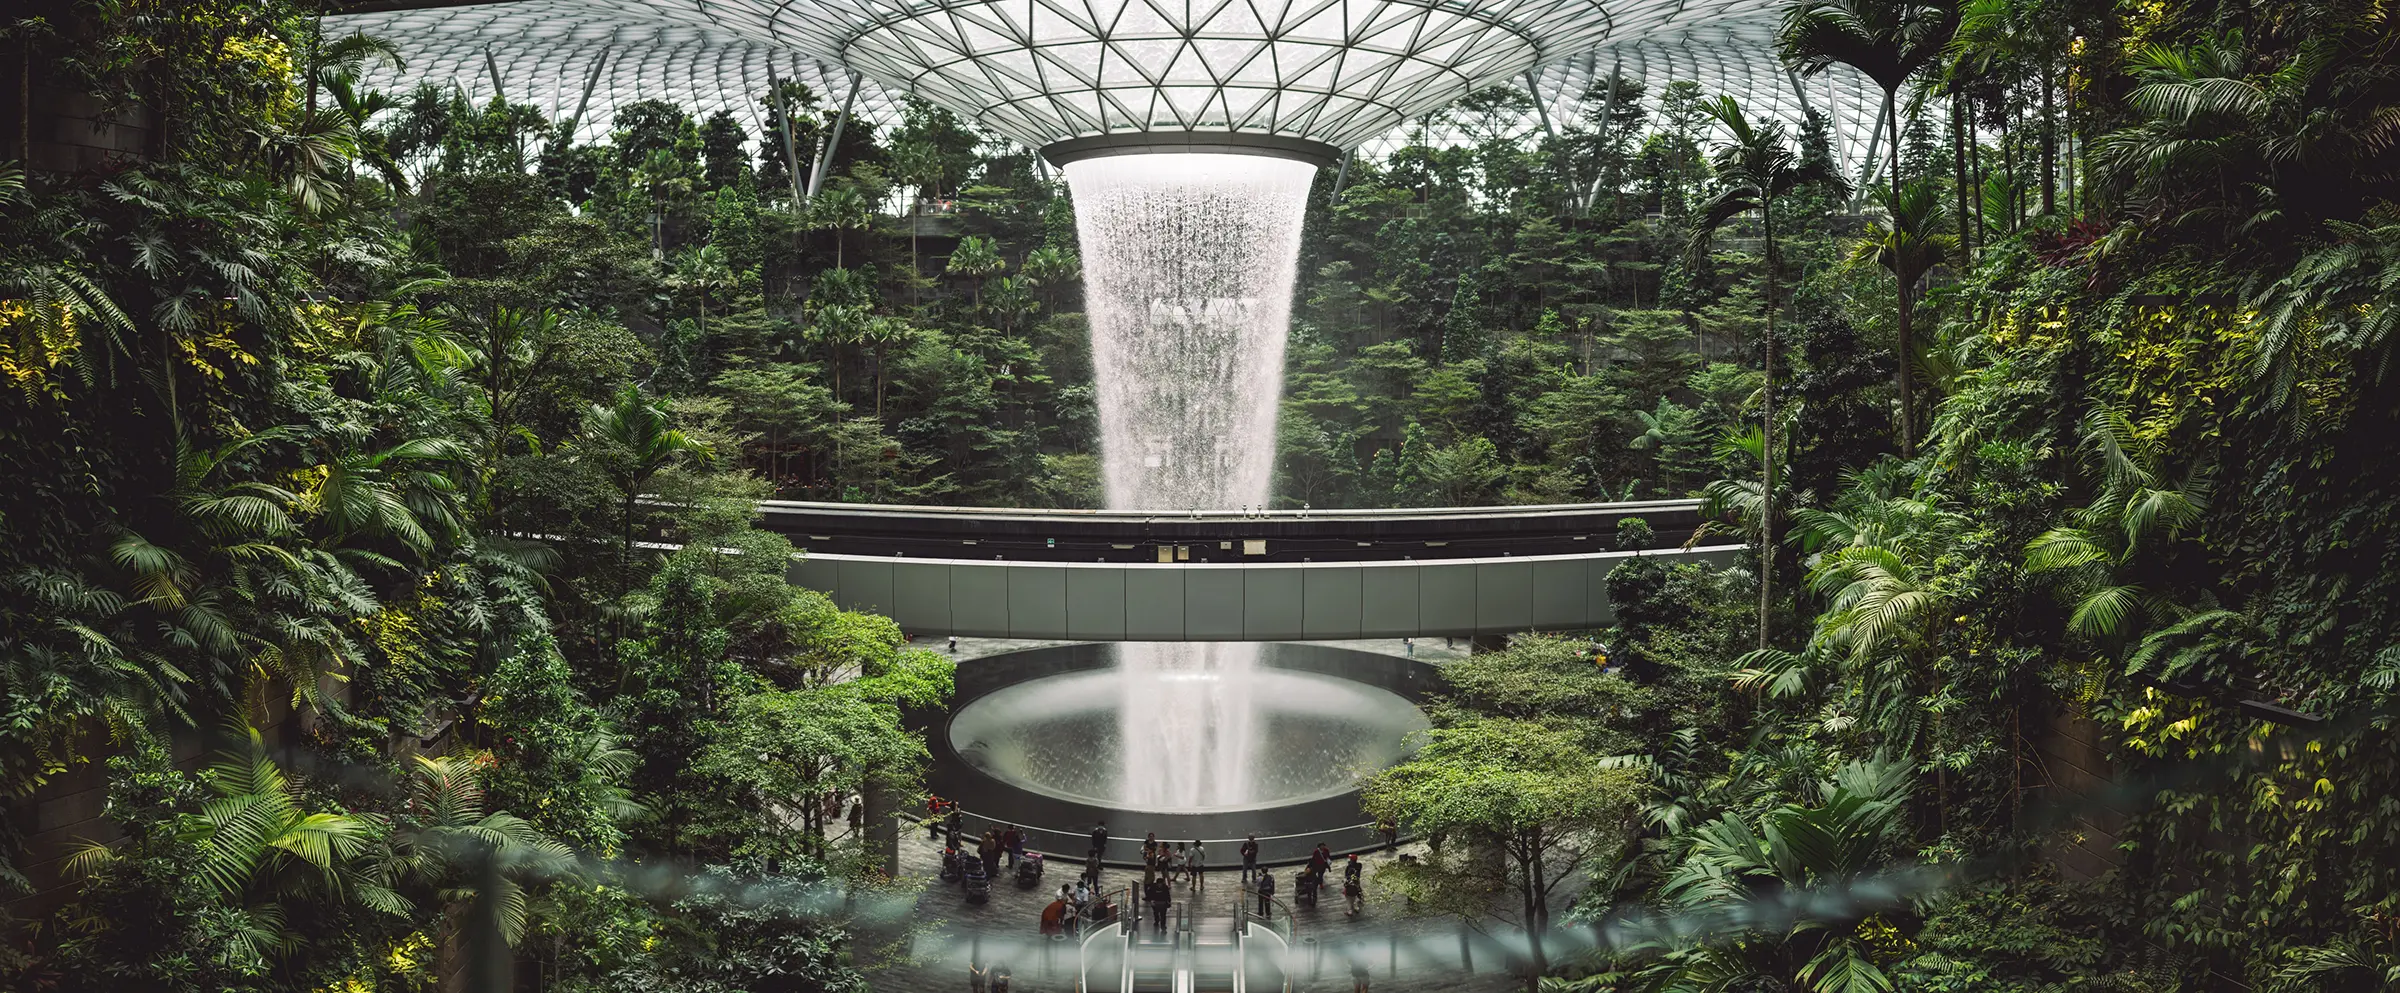 Changi Airport Waterfall in Sinagpore